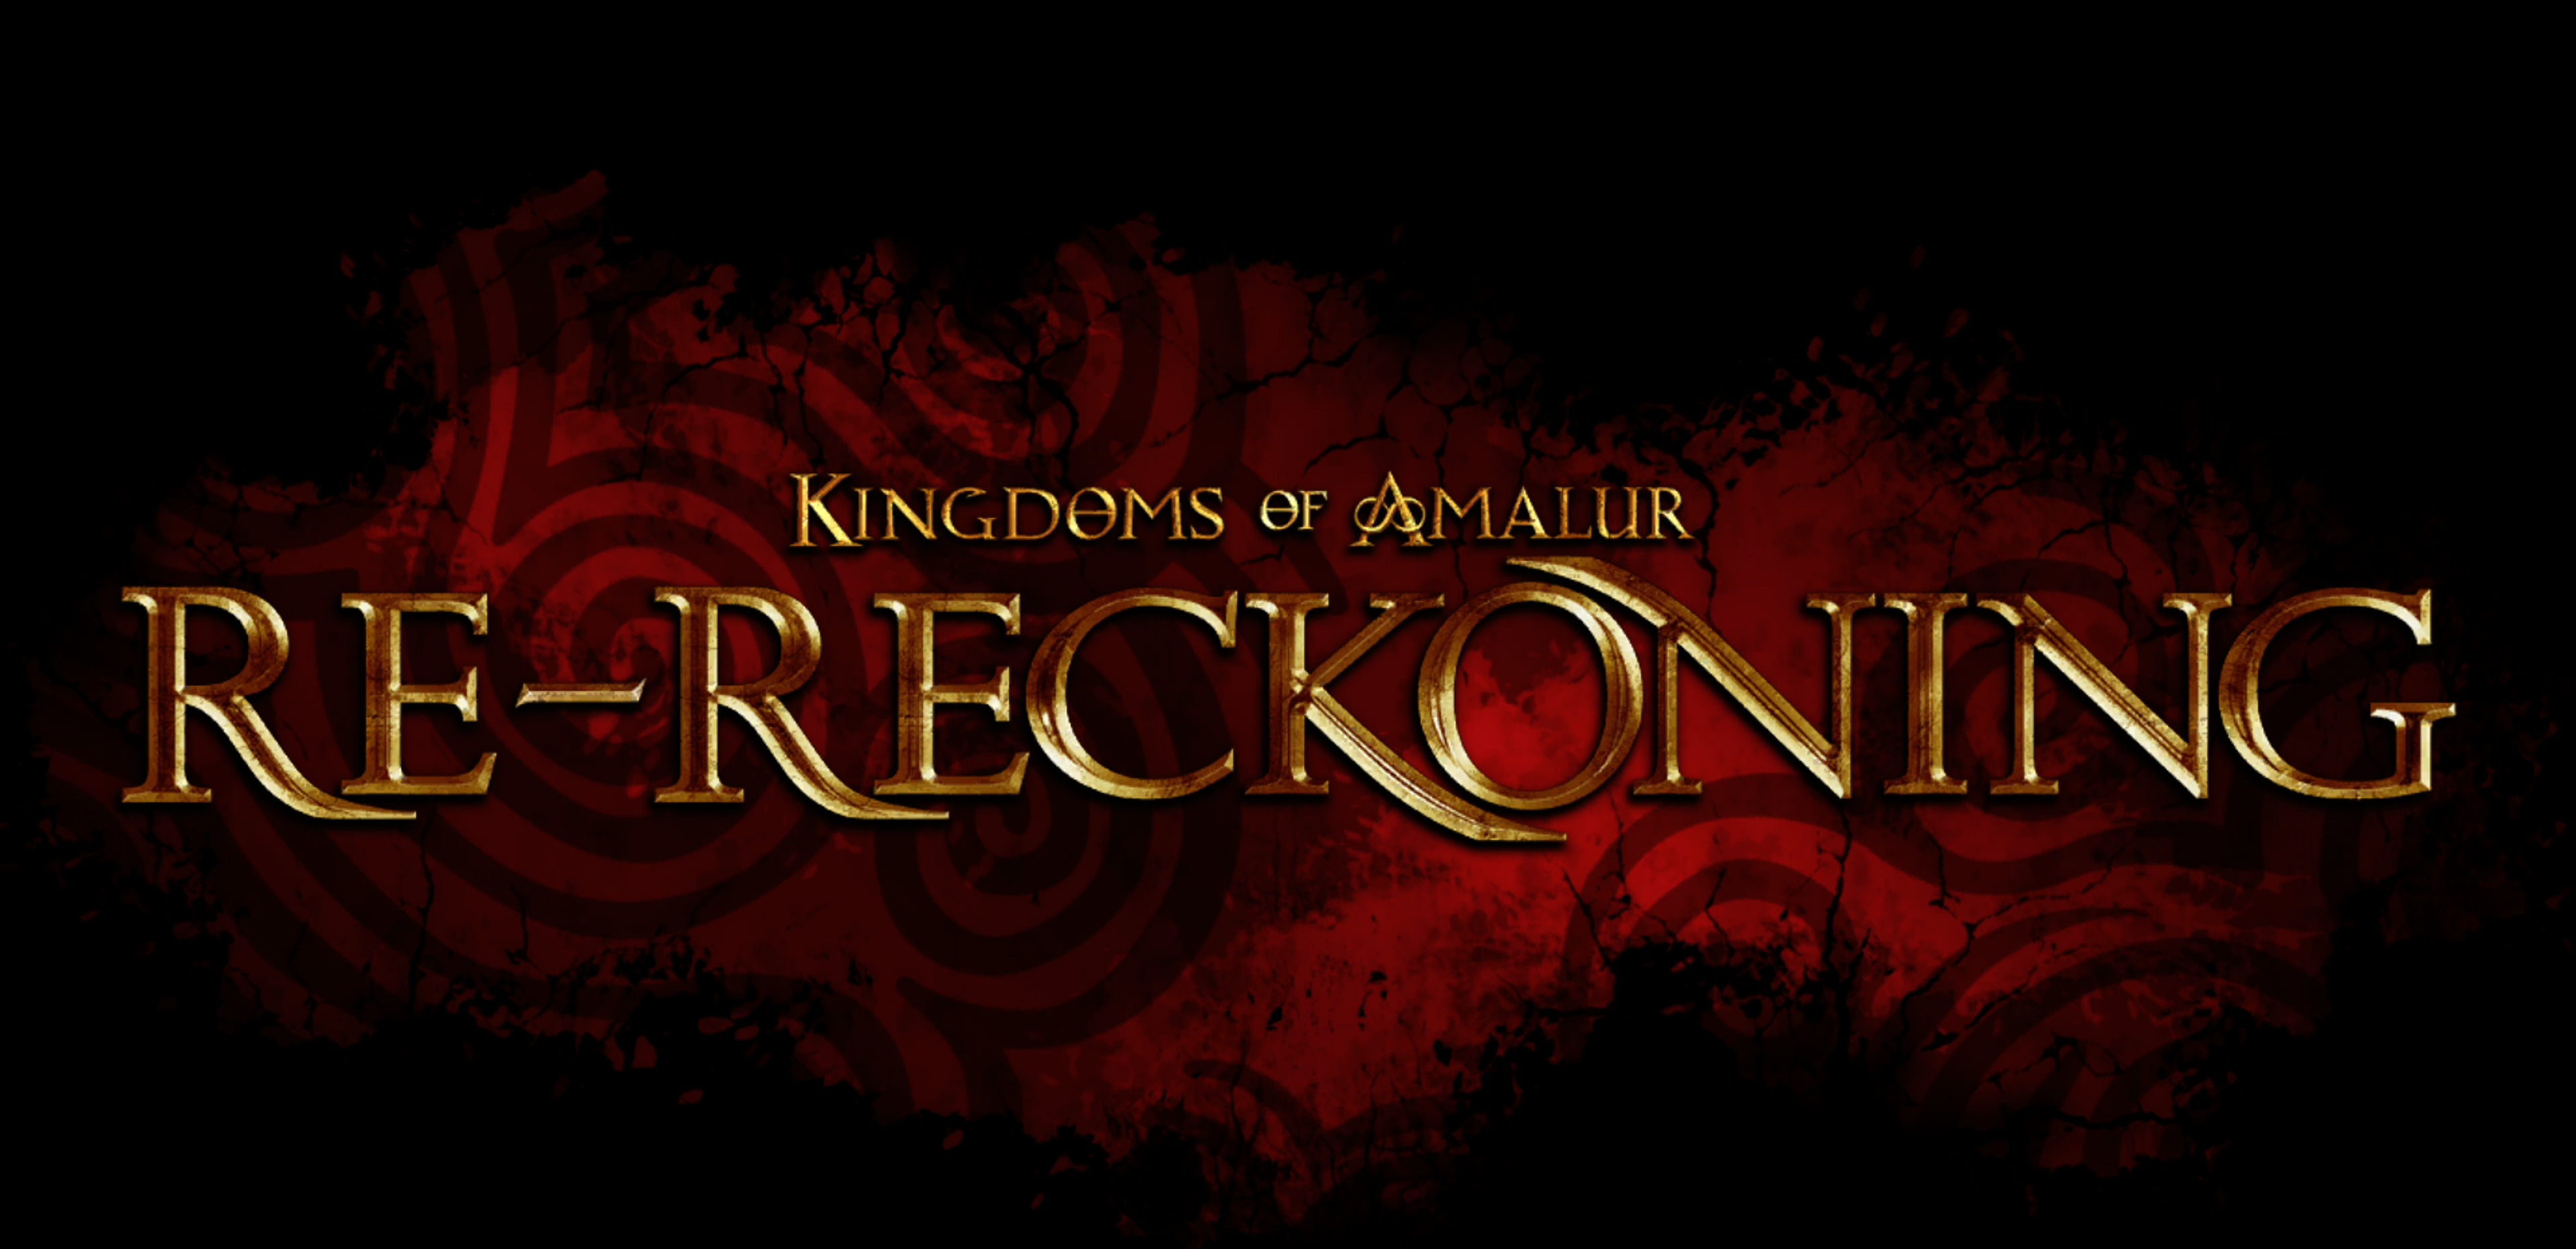 Kingdoms of Amalur: Re-Reckoning